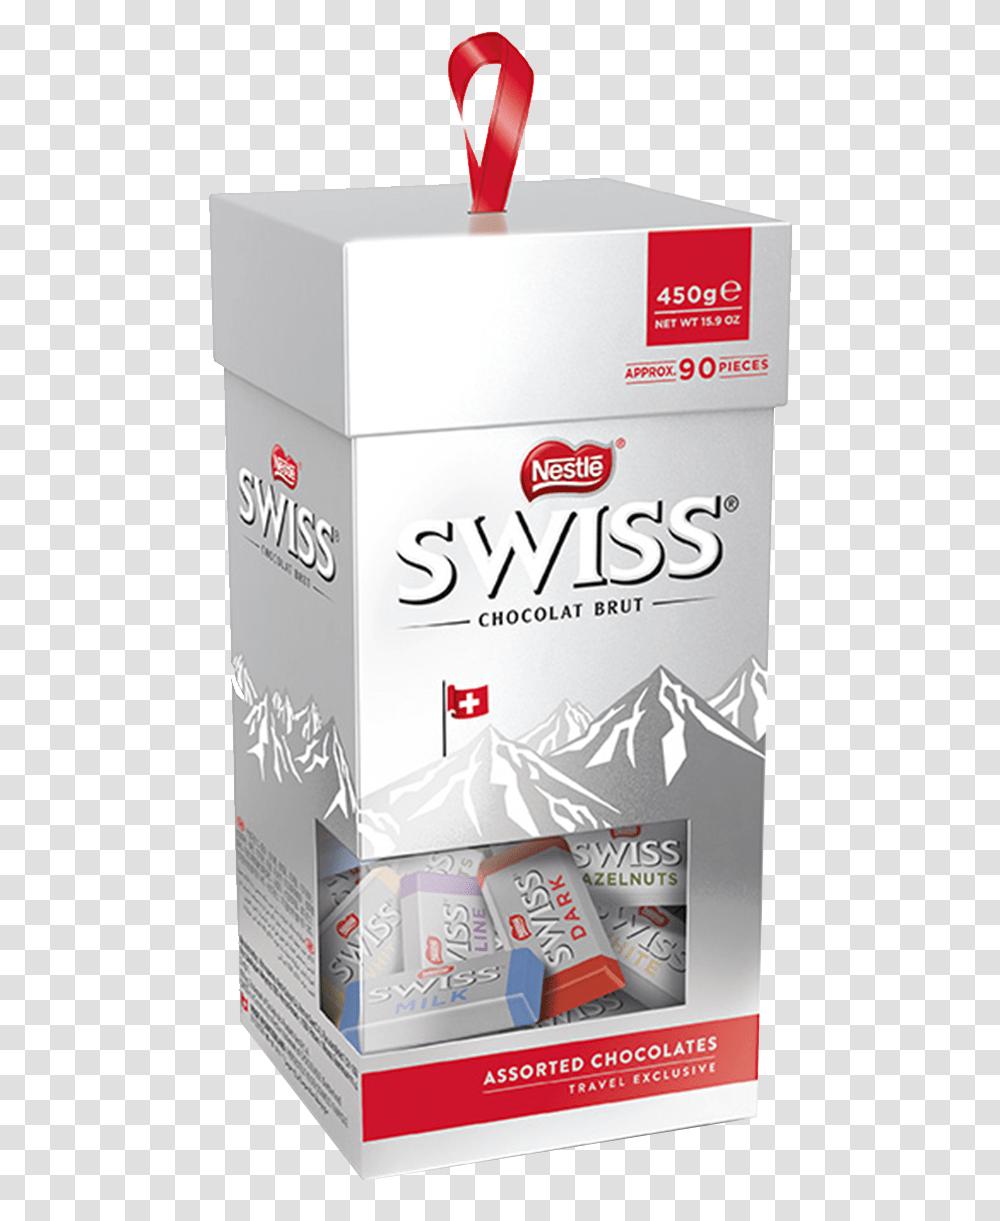 Nestl Swiss Choc Tower, Bottle, Food, Beverage Transparent Png